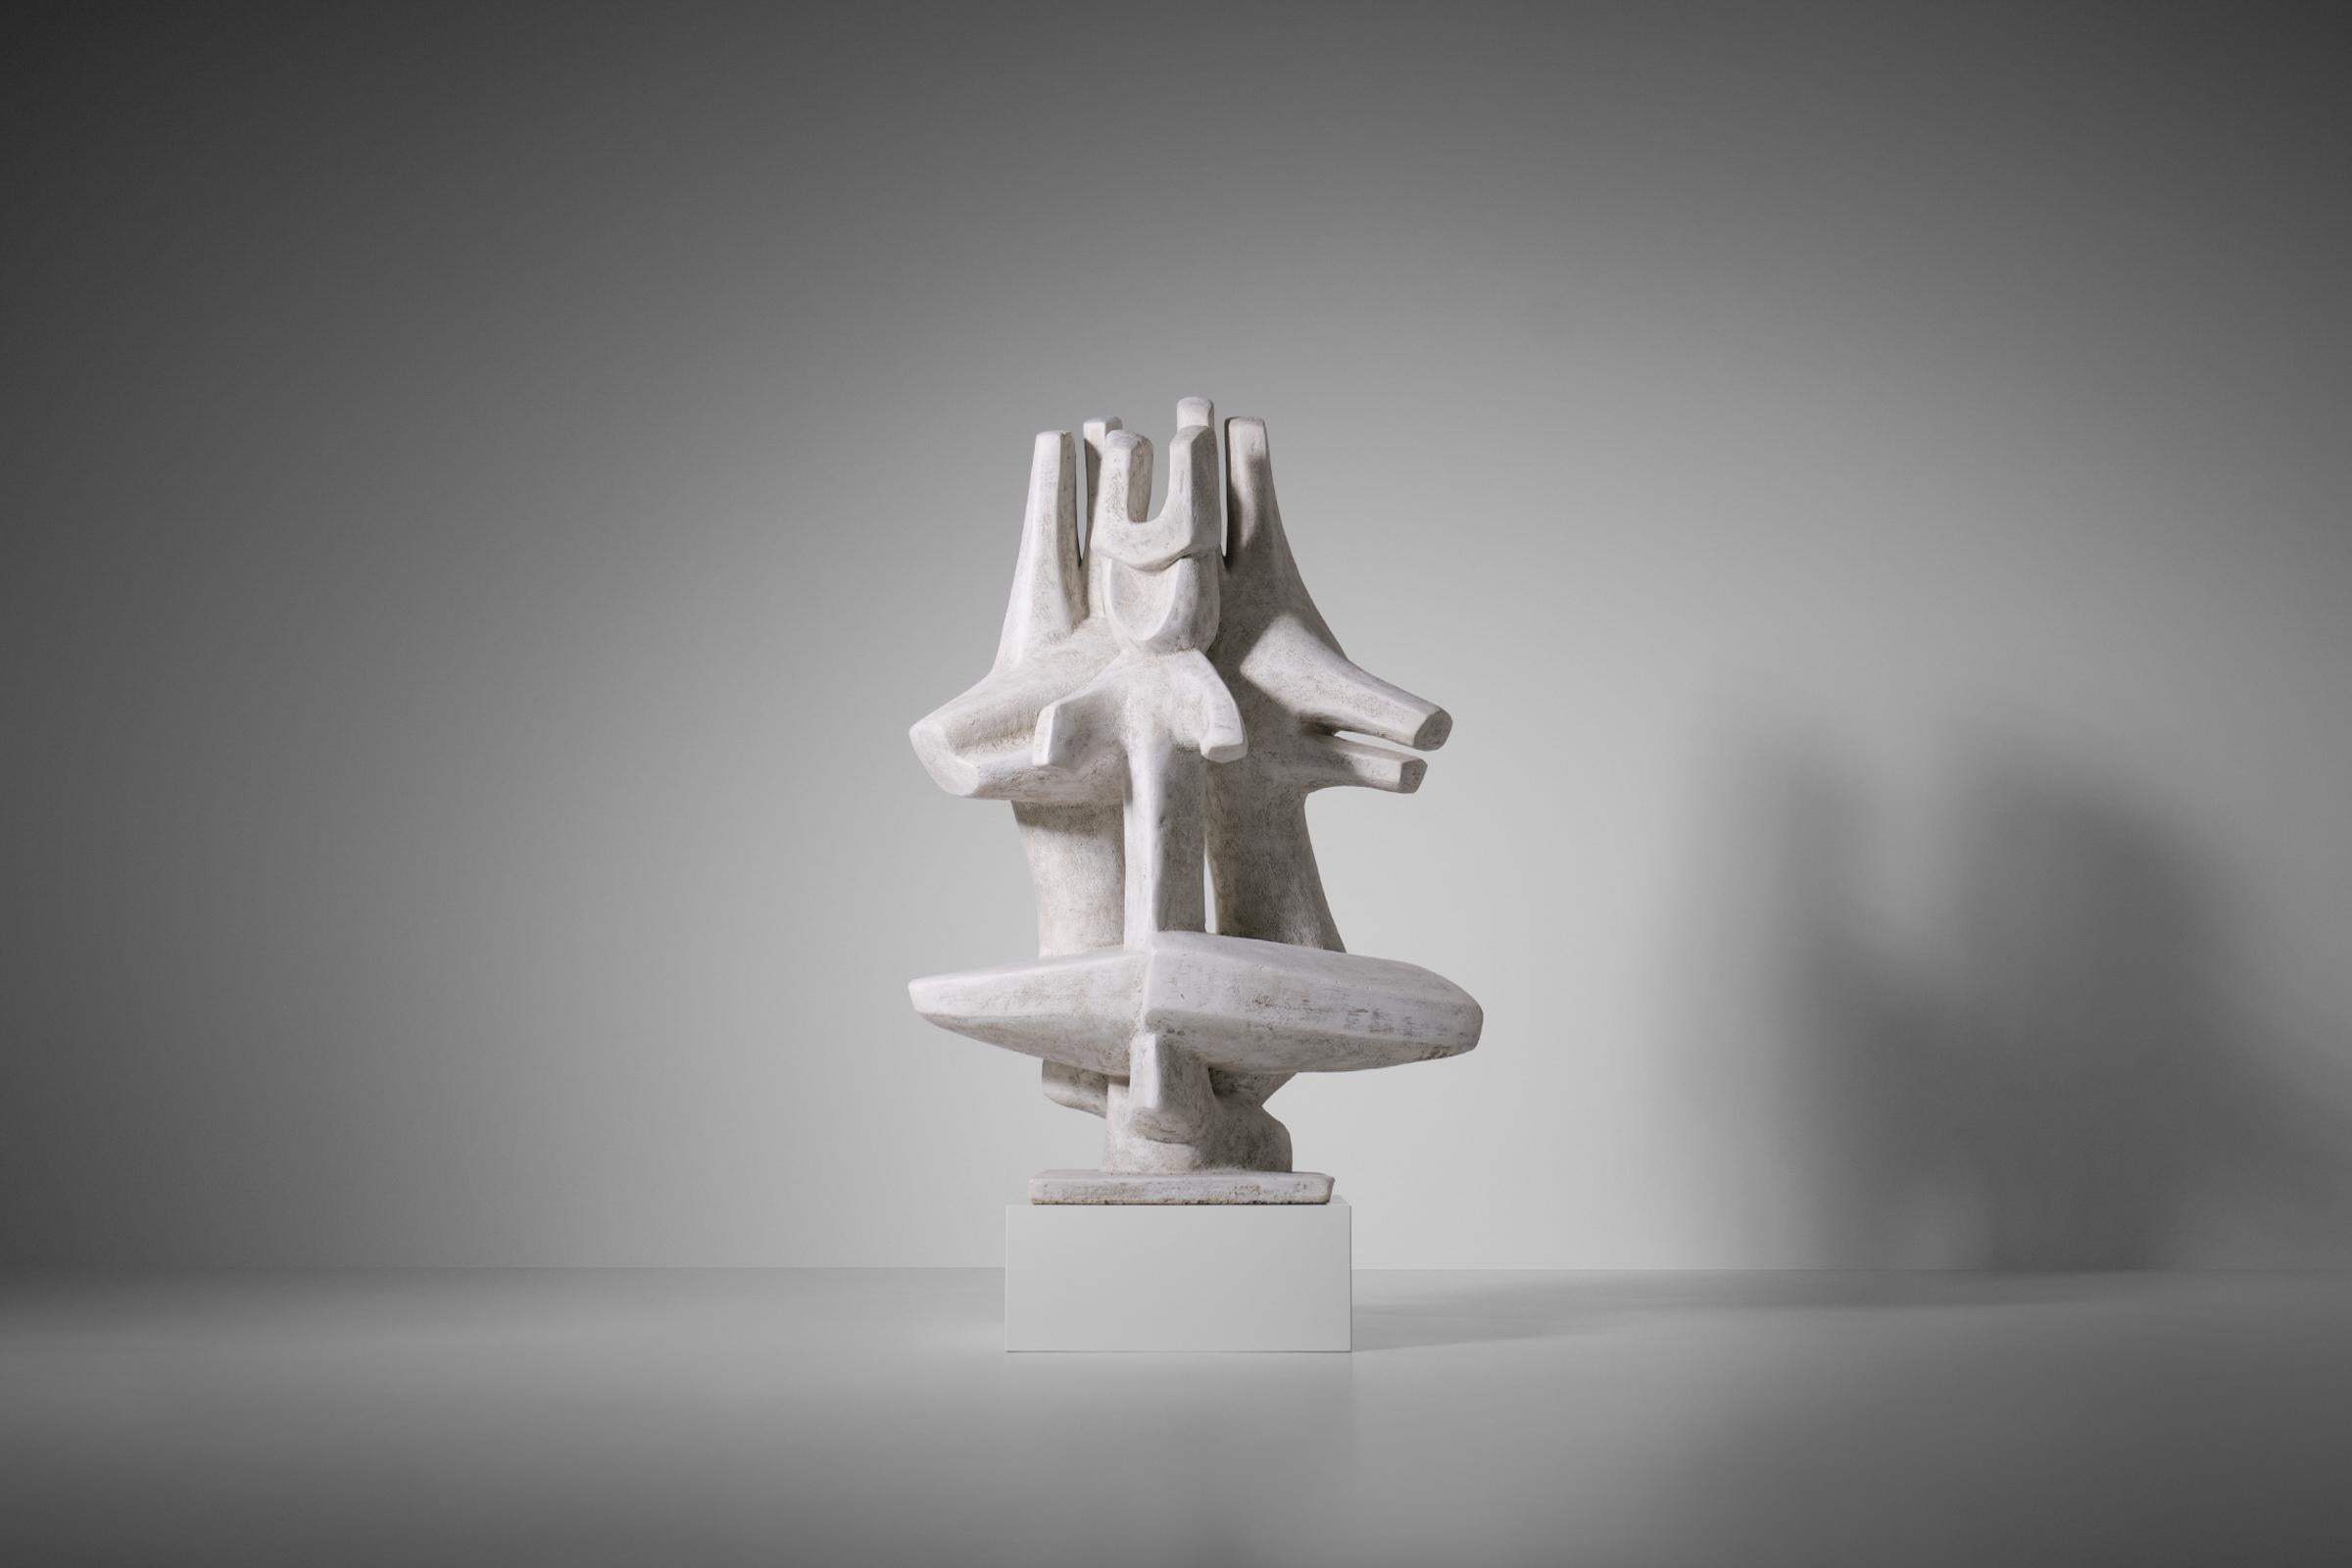 Unique Grande sculpture abstraite de Roger Desserprit (1923-1985), France 1981. La sculpture est faite de béton avec un cadre métallique à l'intérieur, la surface est recouverte d'un plâtre de ciment qui est fini avec une peinture structurée. Il